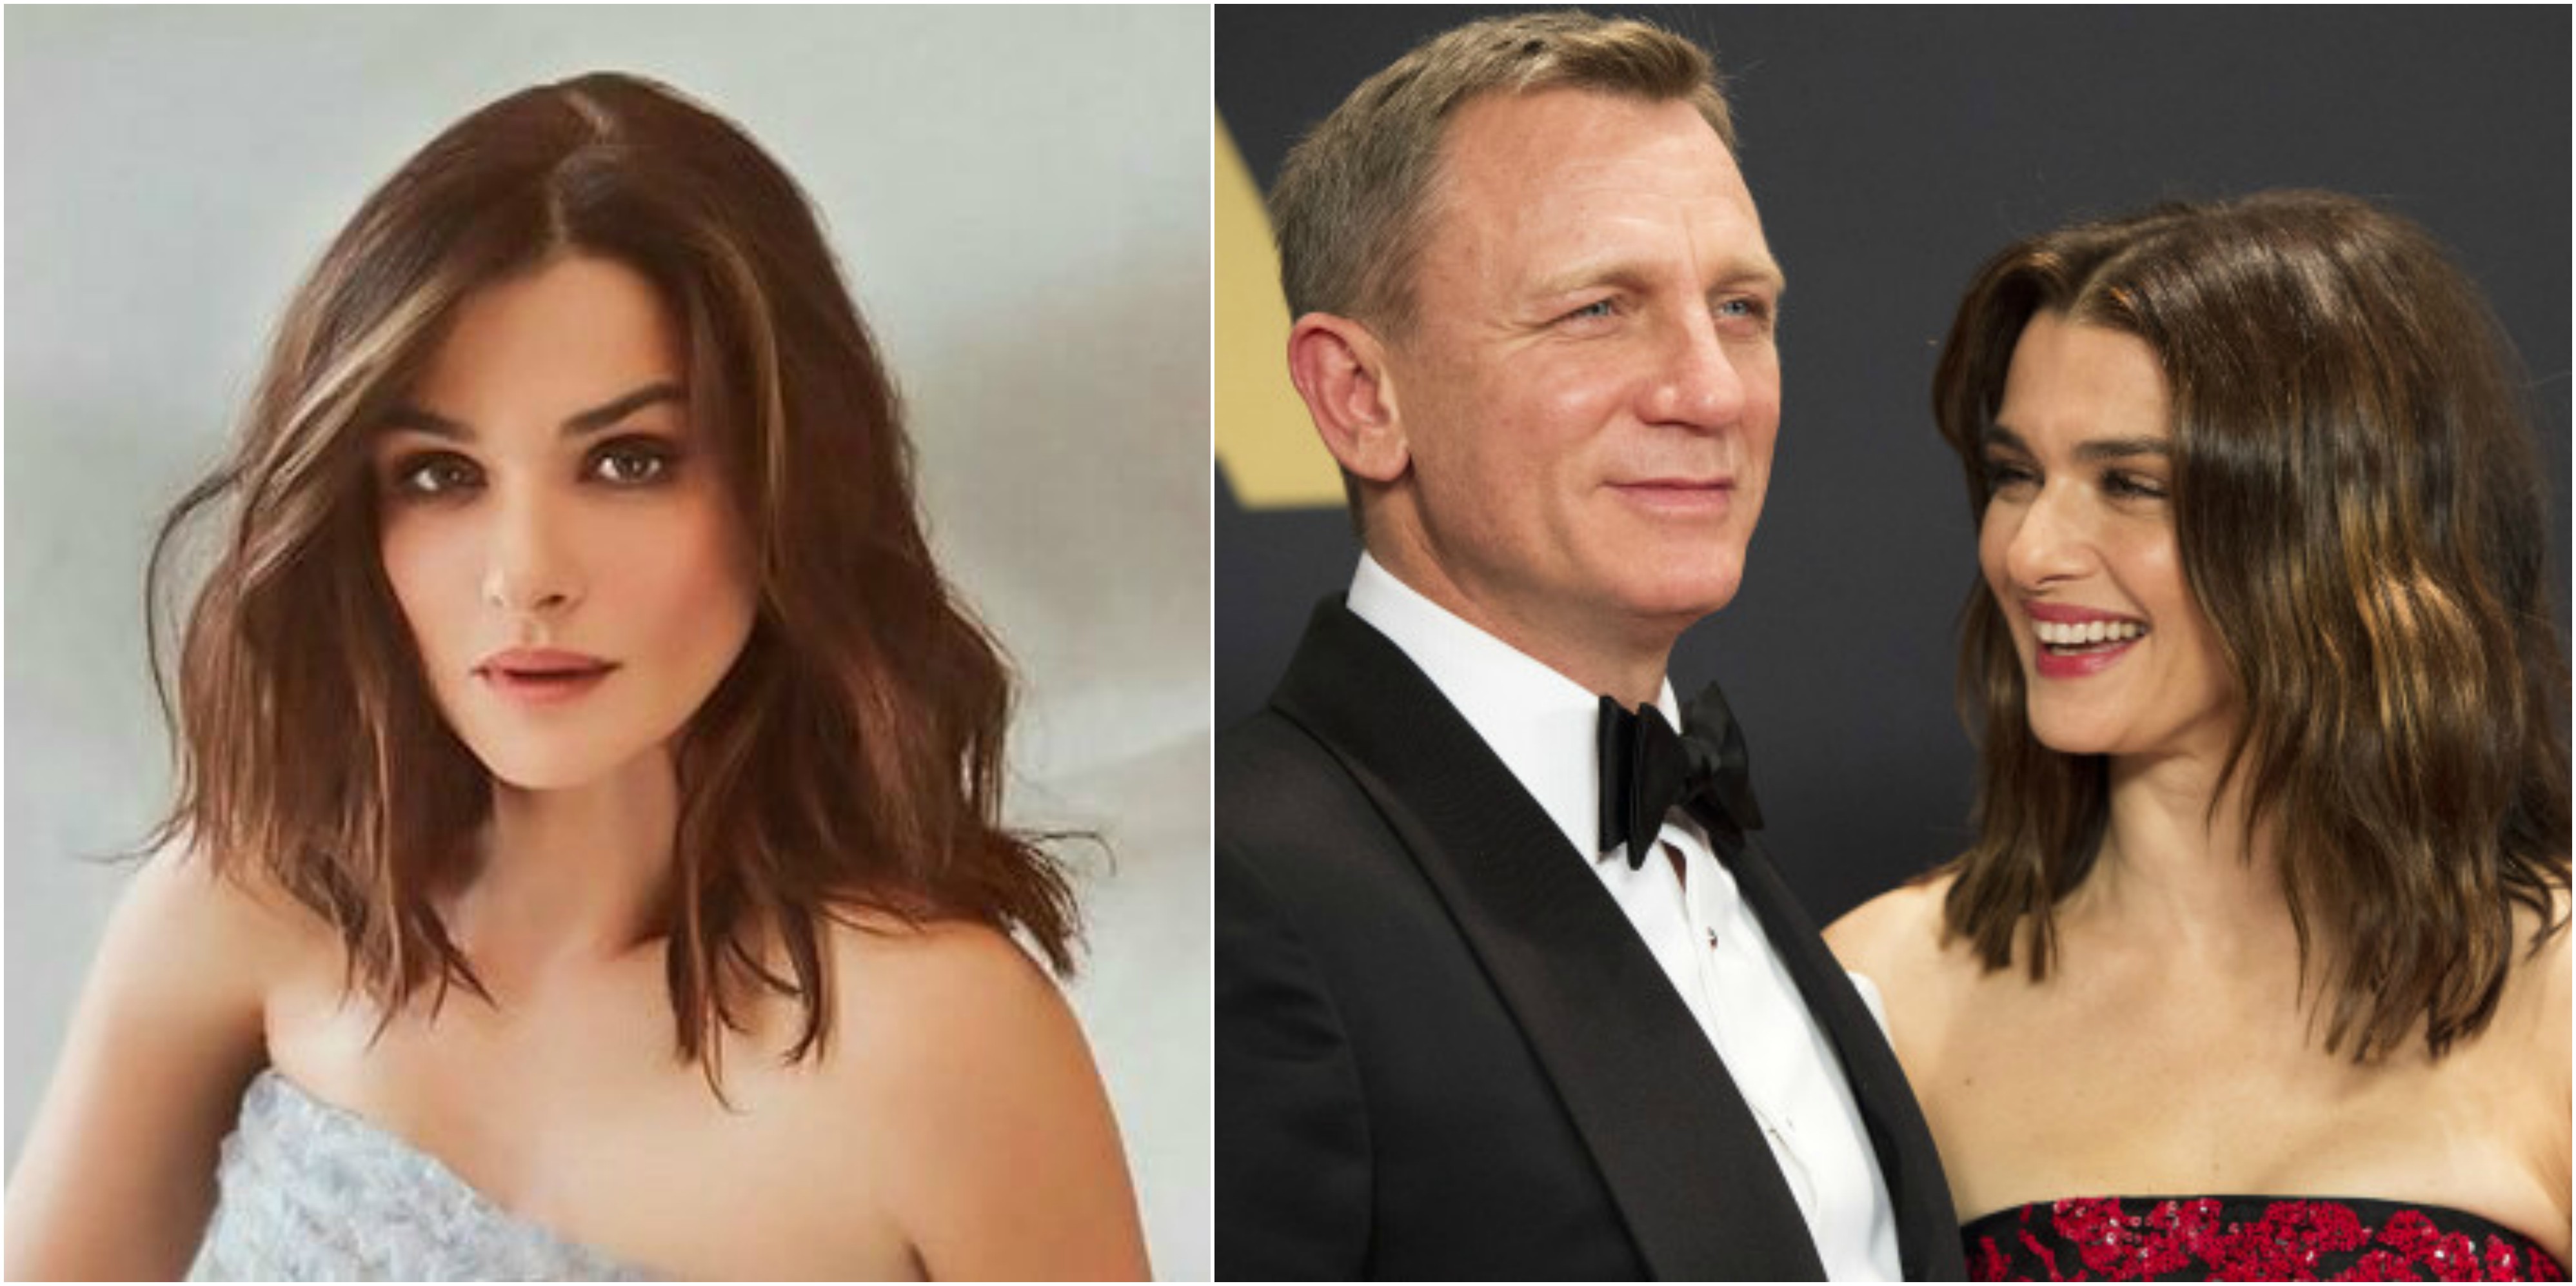 Bintang Filem The Mummy & James Bond Bakal Timang Cahaya Mata Pertama